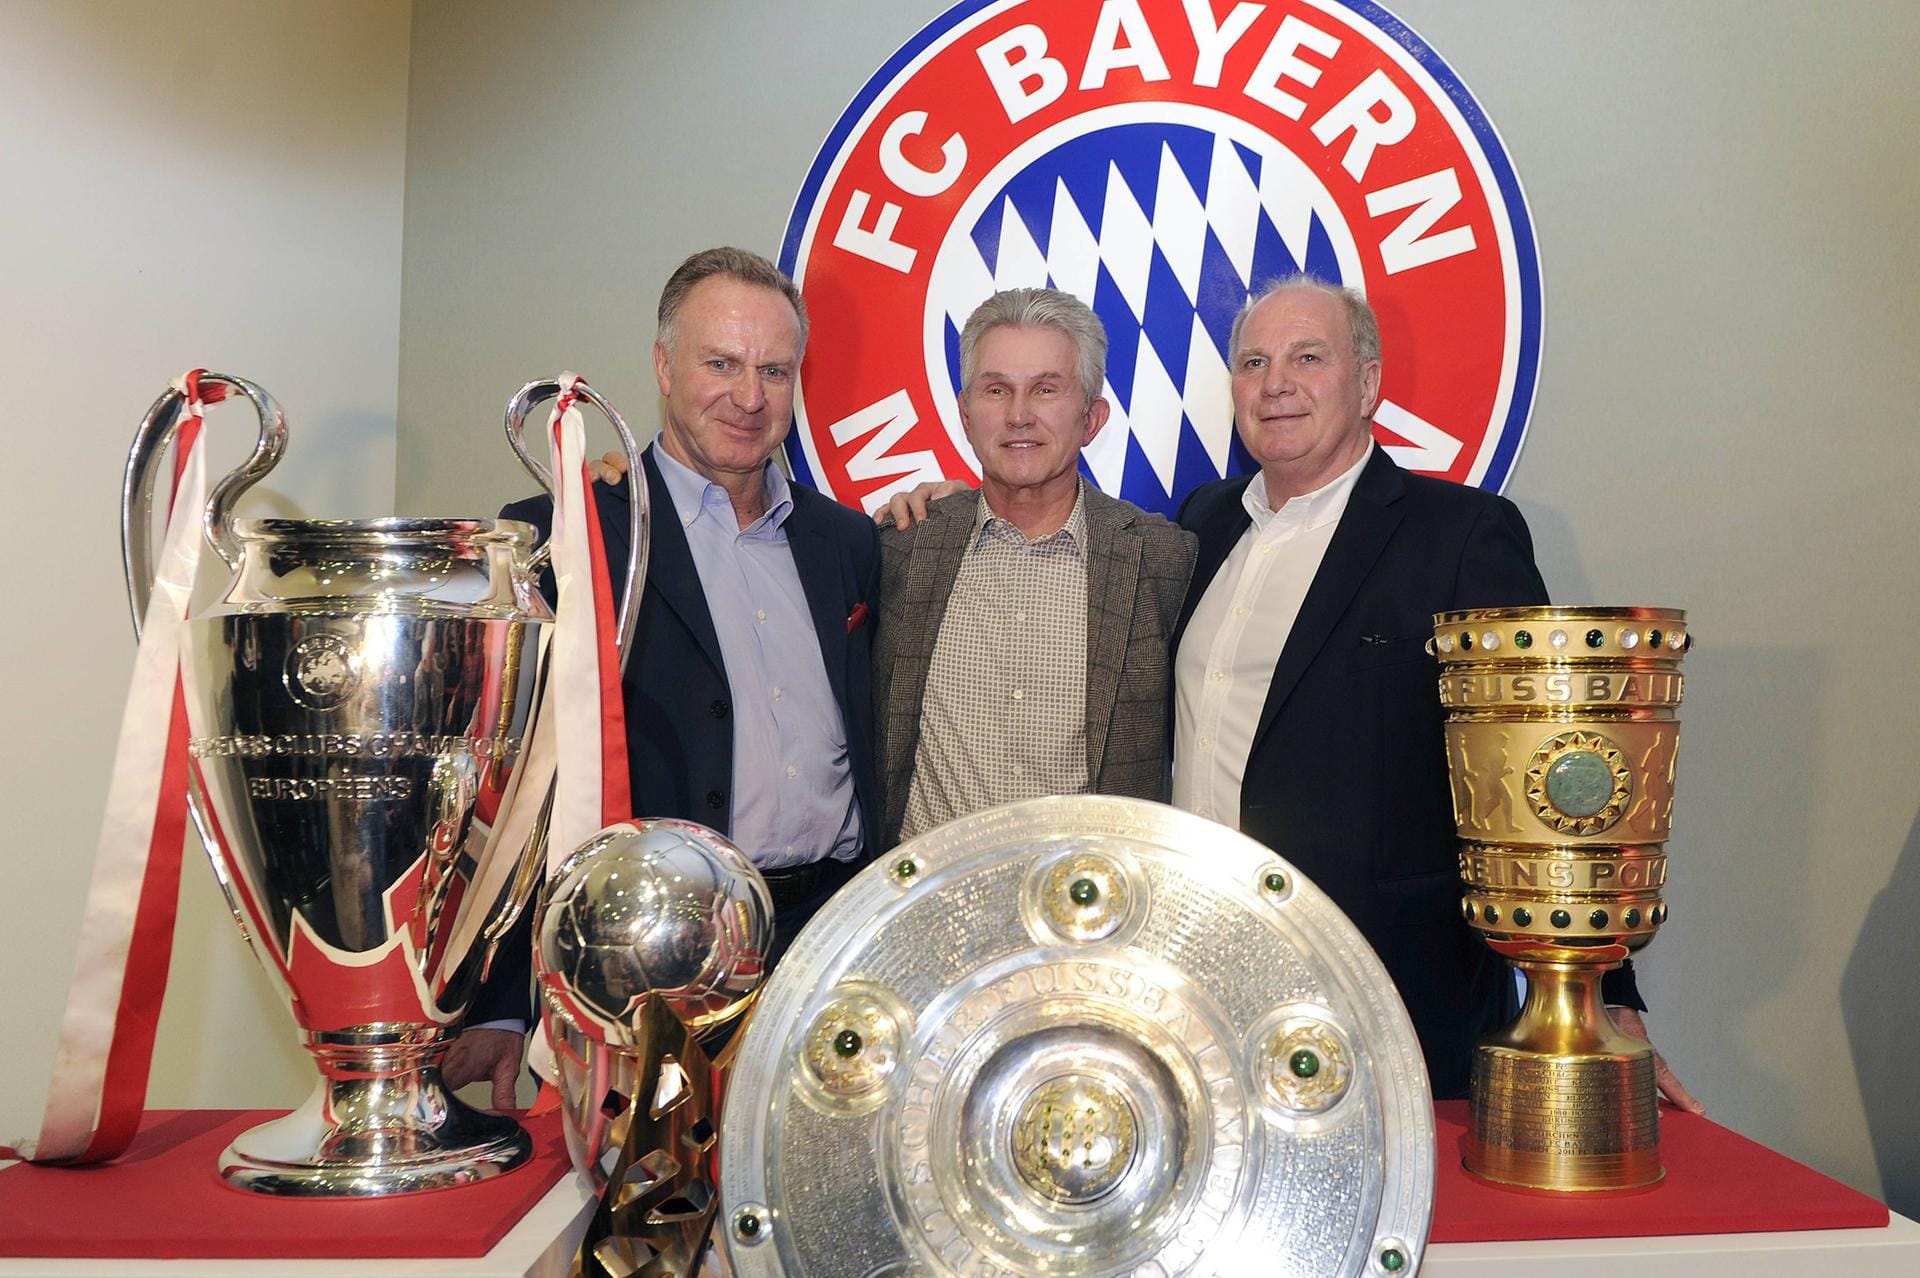 Neben insgesamt 14 Meisterschaften und zehn Triumphen im DFB-Pokal gehört vor allem das Tripple von 2013 zu den herausragendsten Erfolgen des FC Bayern mit Rummenigge als Vorstandsvorsitzenden.